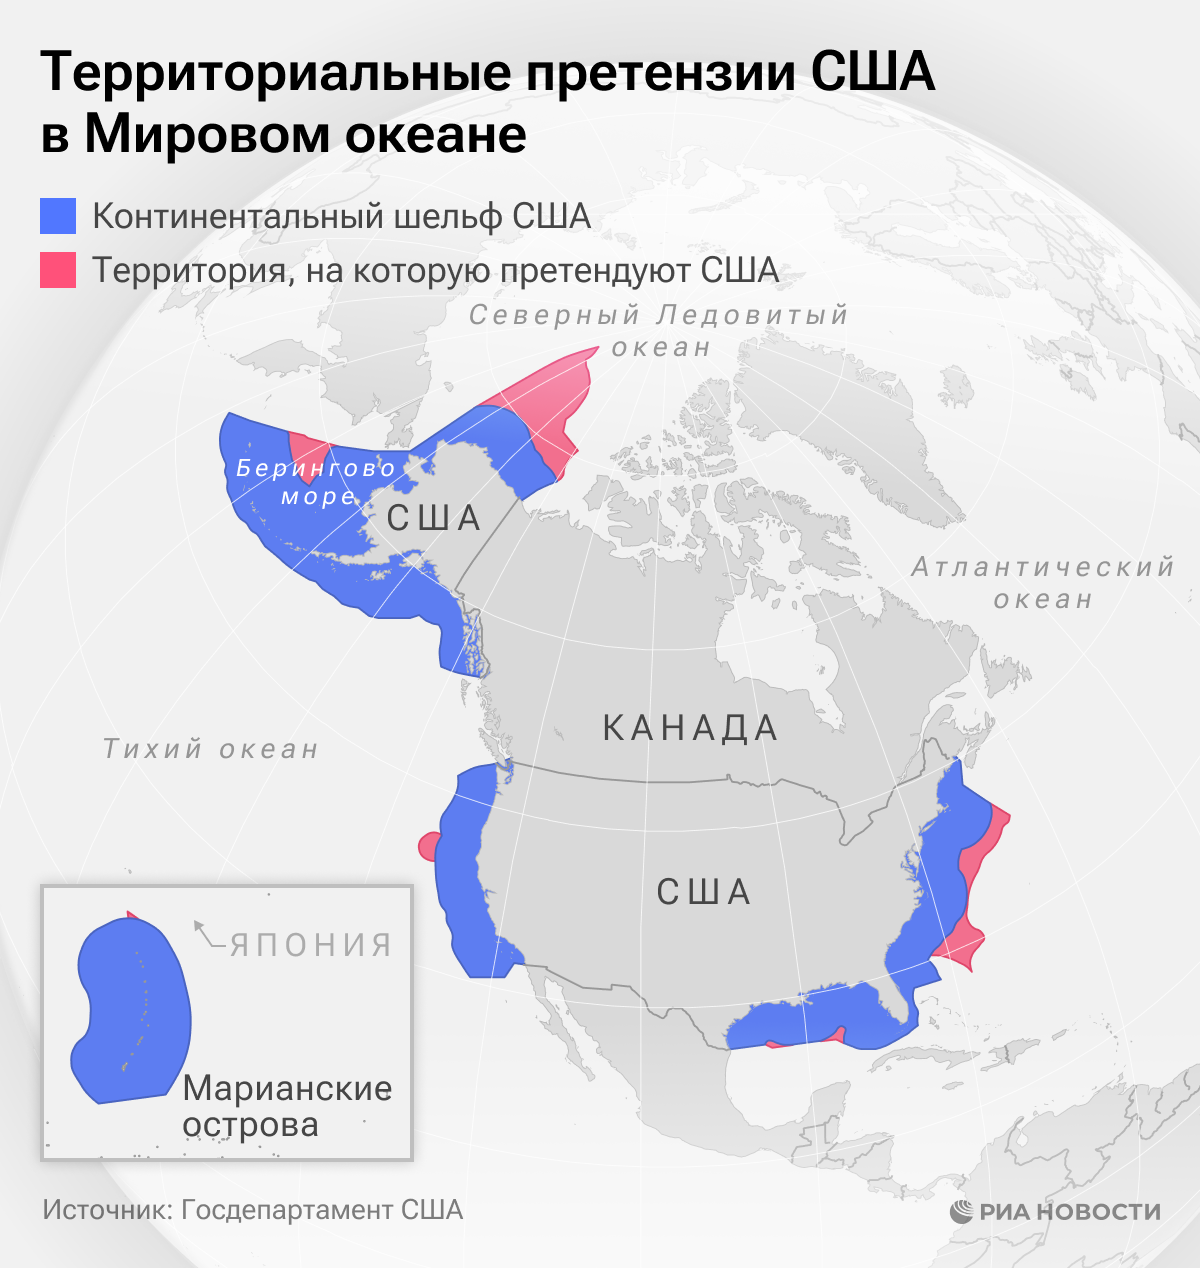 海洋における米国の領土主張